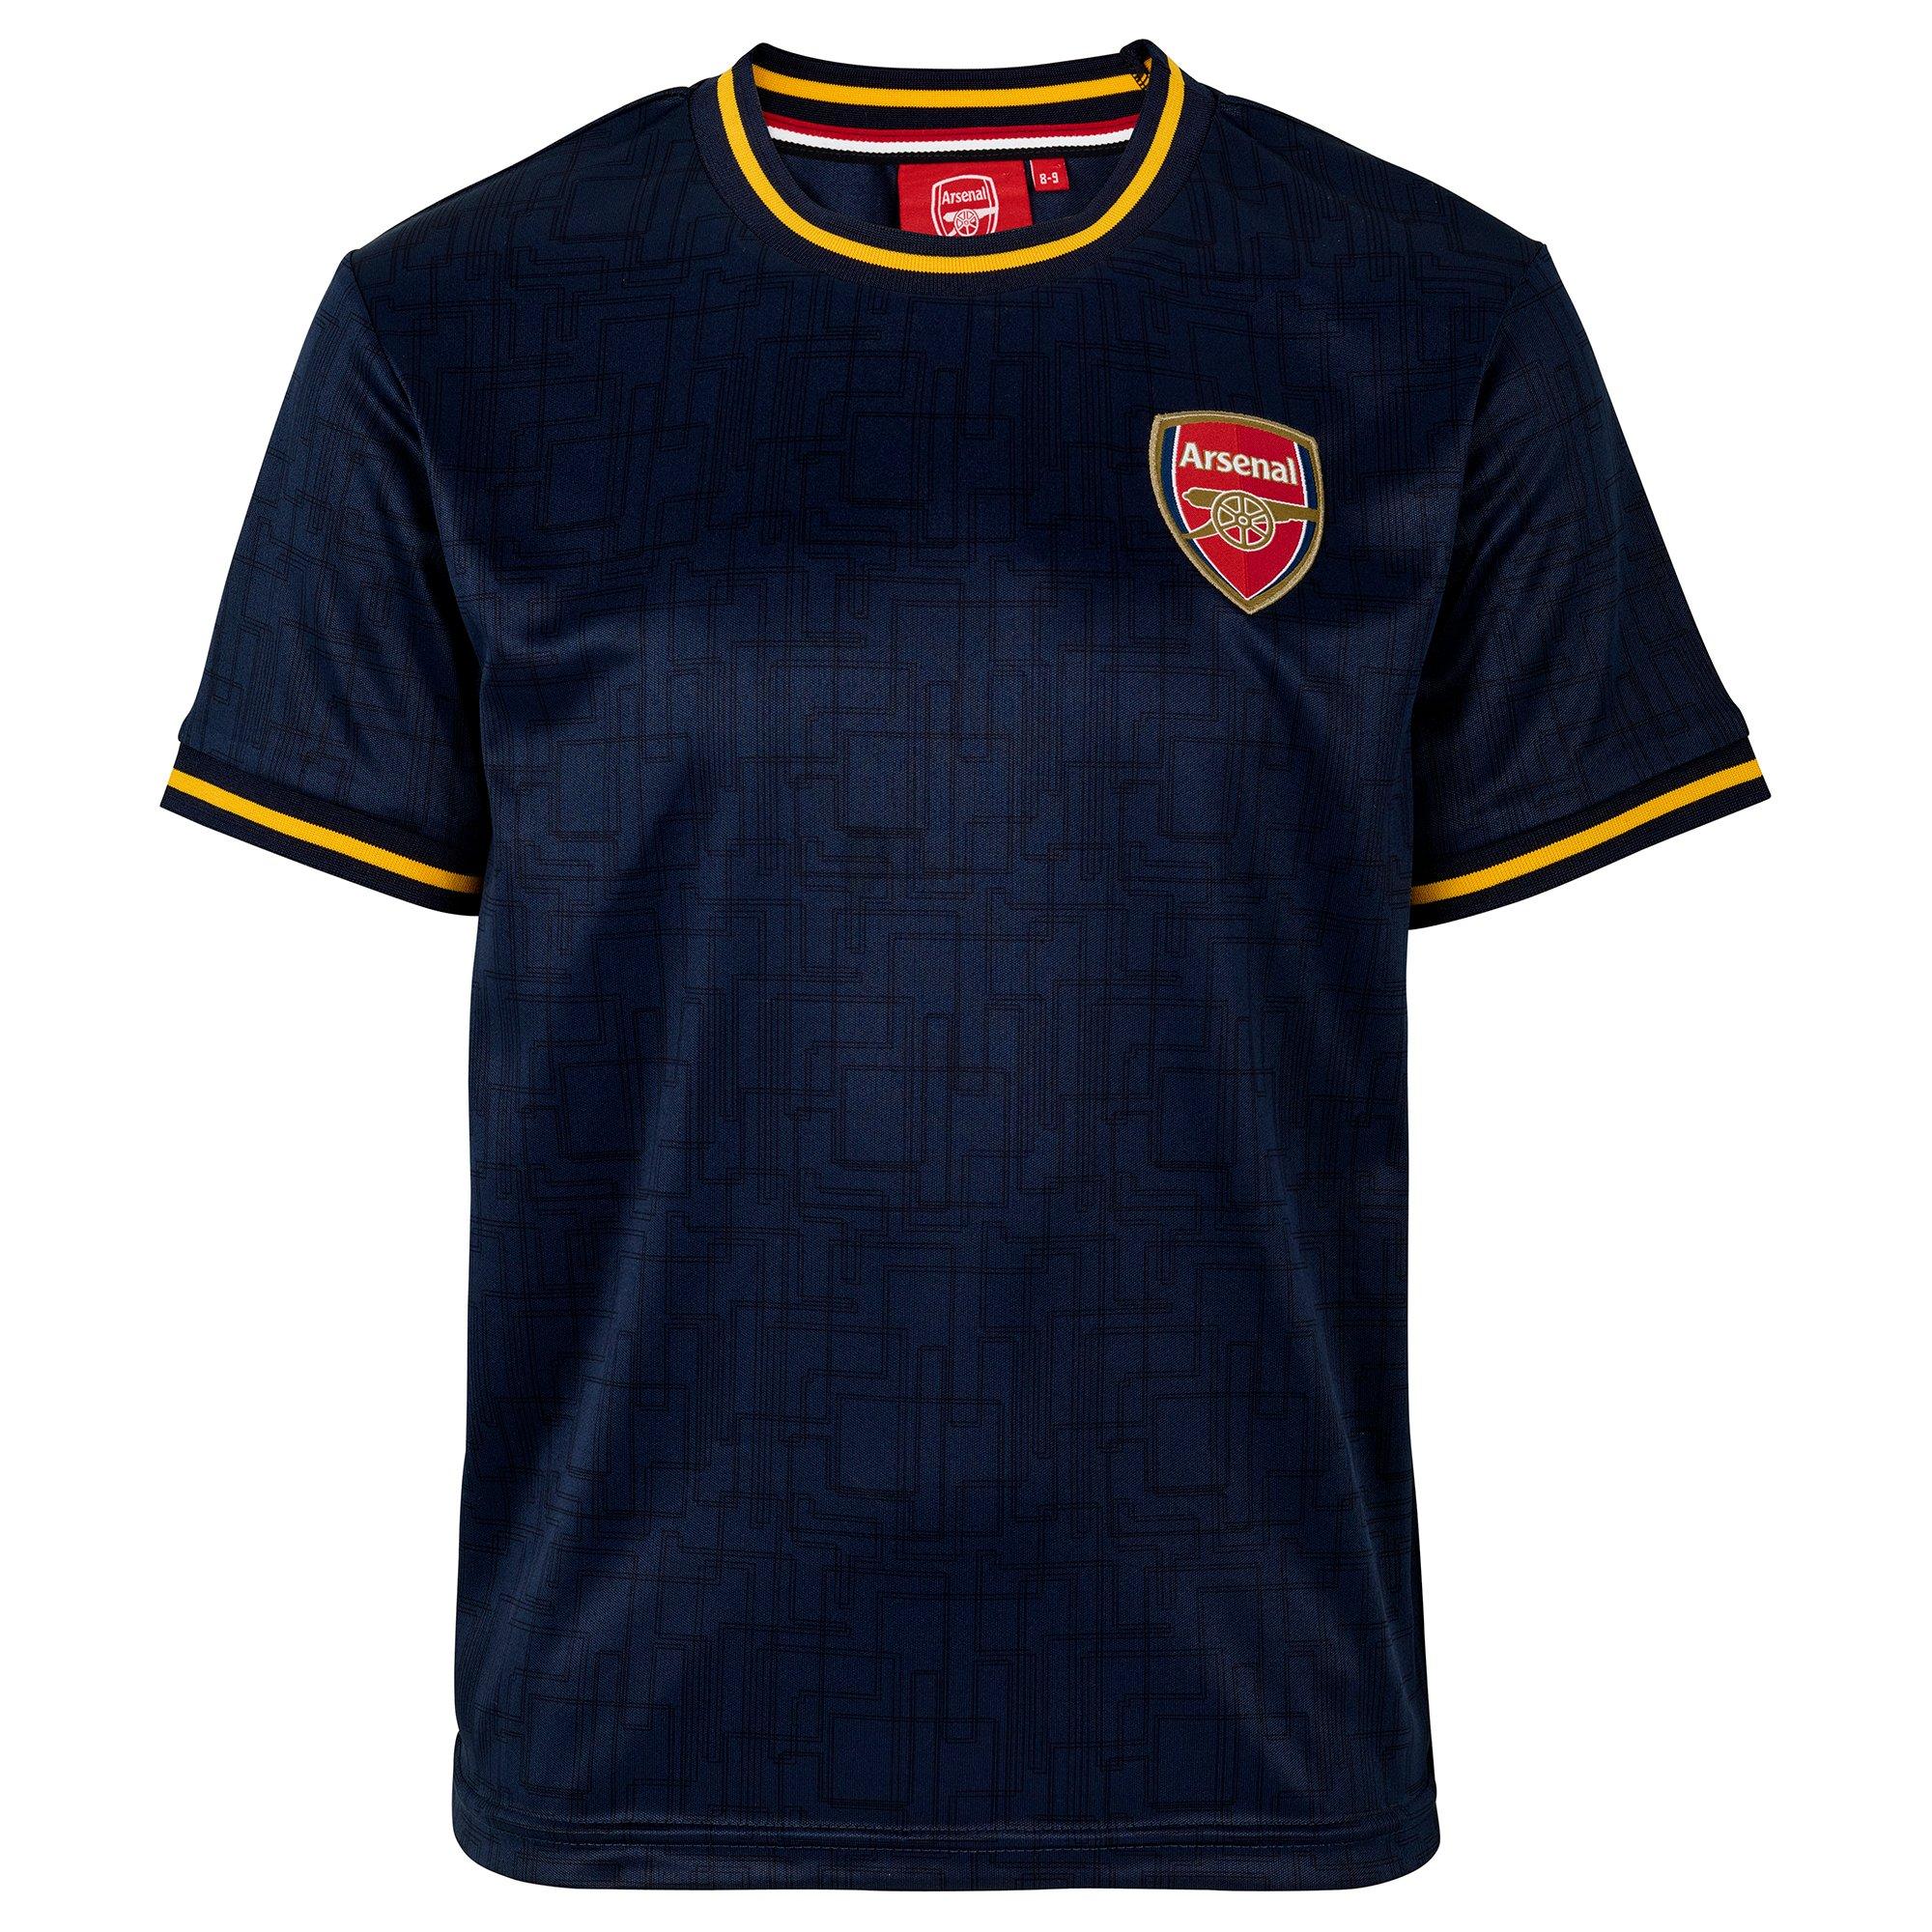 Arsenal ‘Gooner’ Kids Tshirt 13-14 Years BNWT